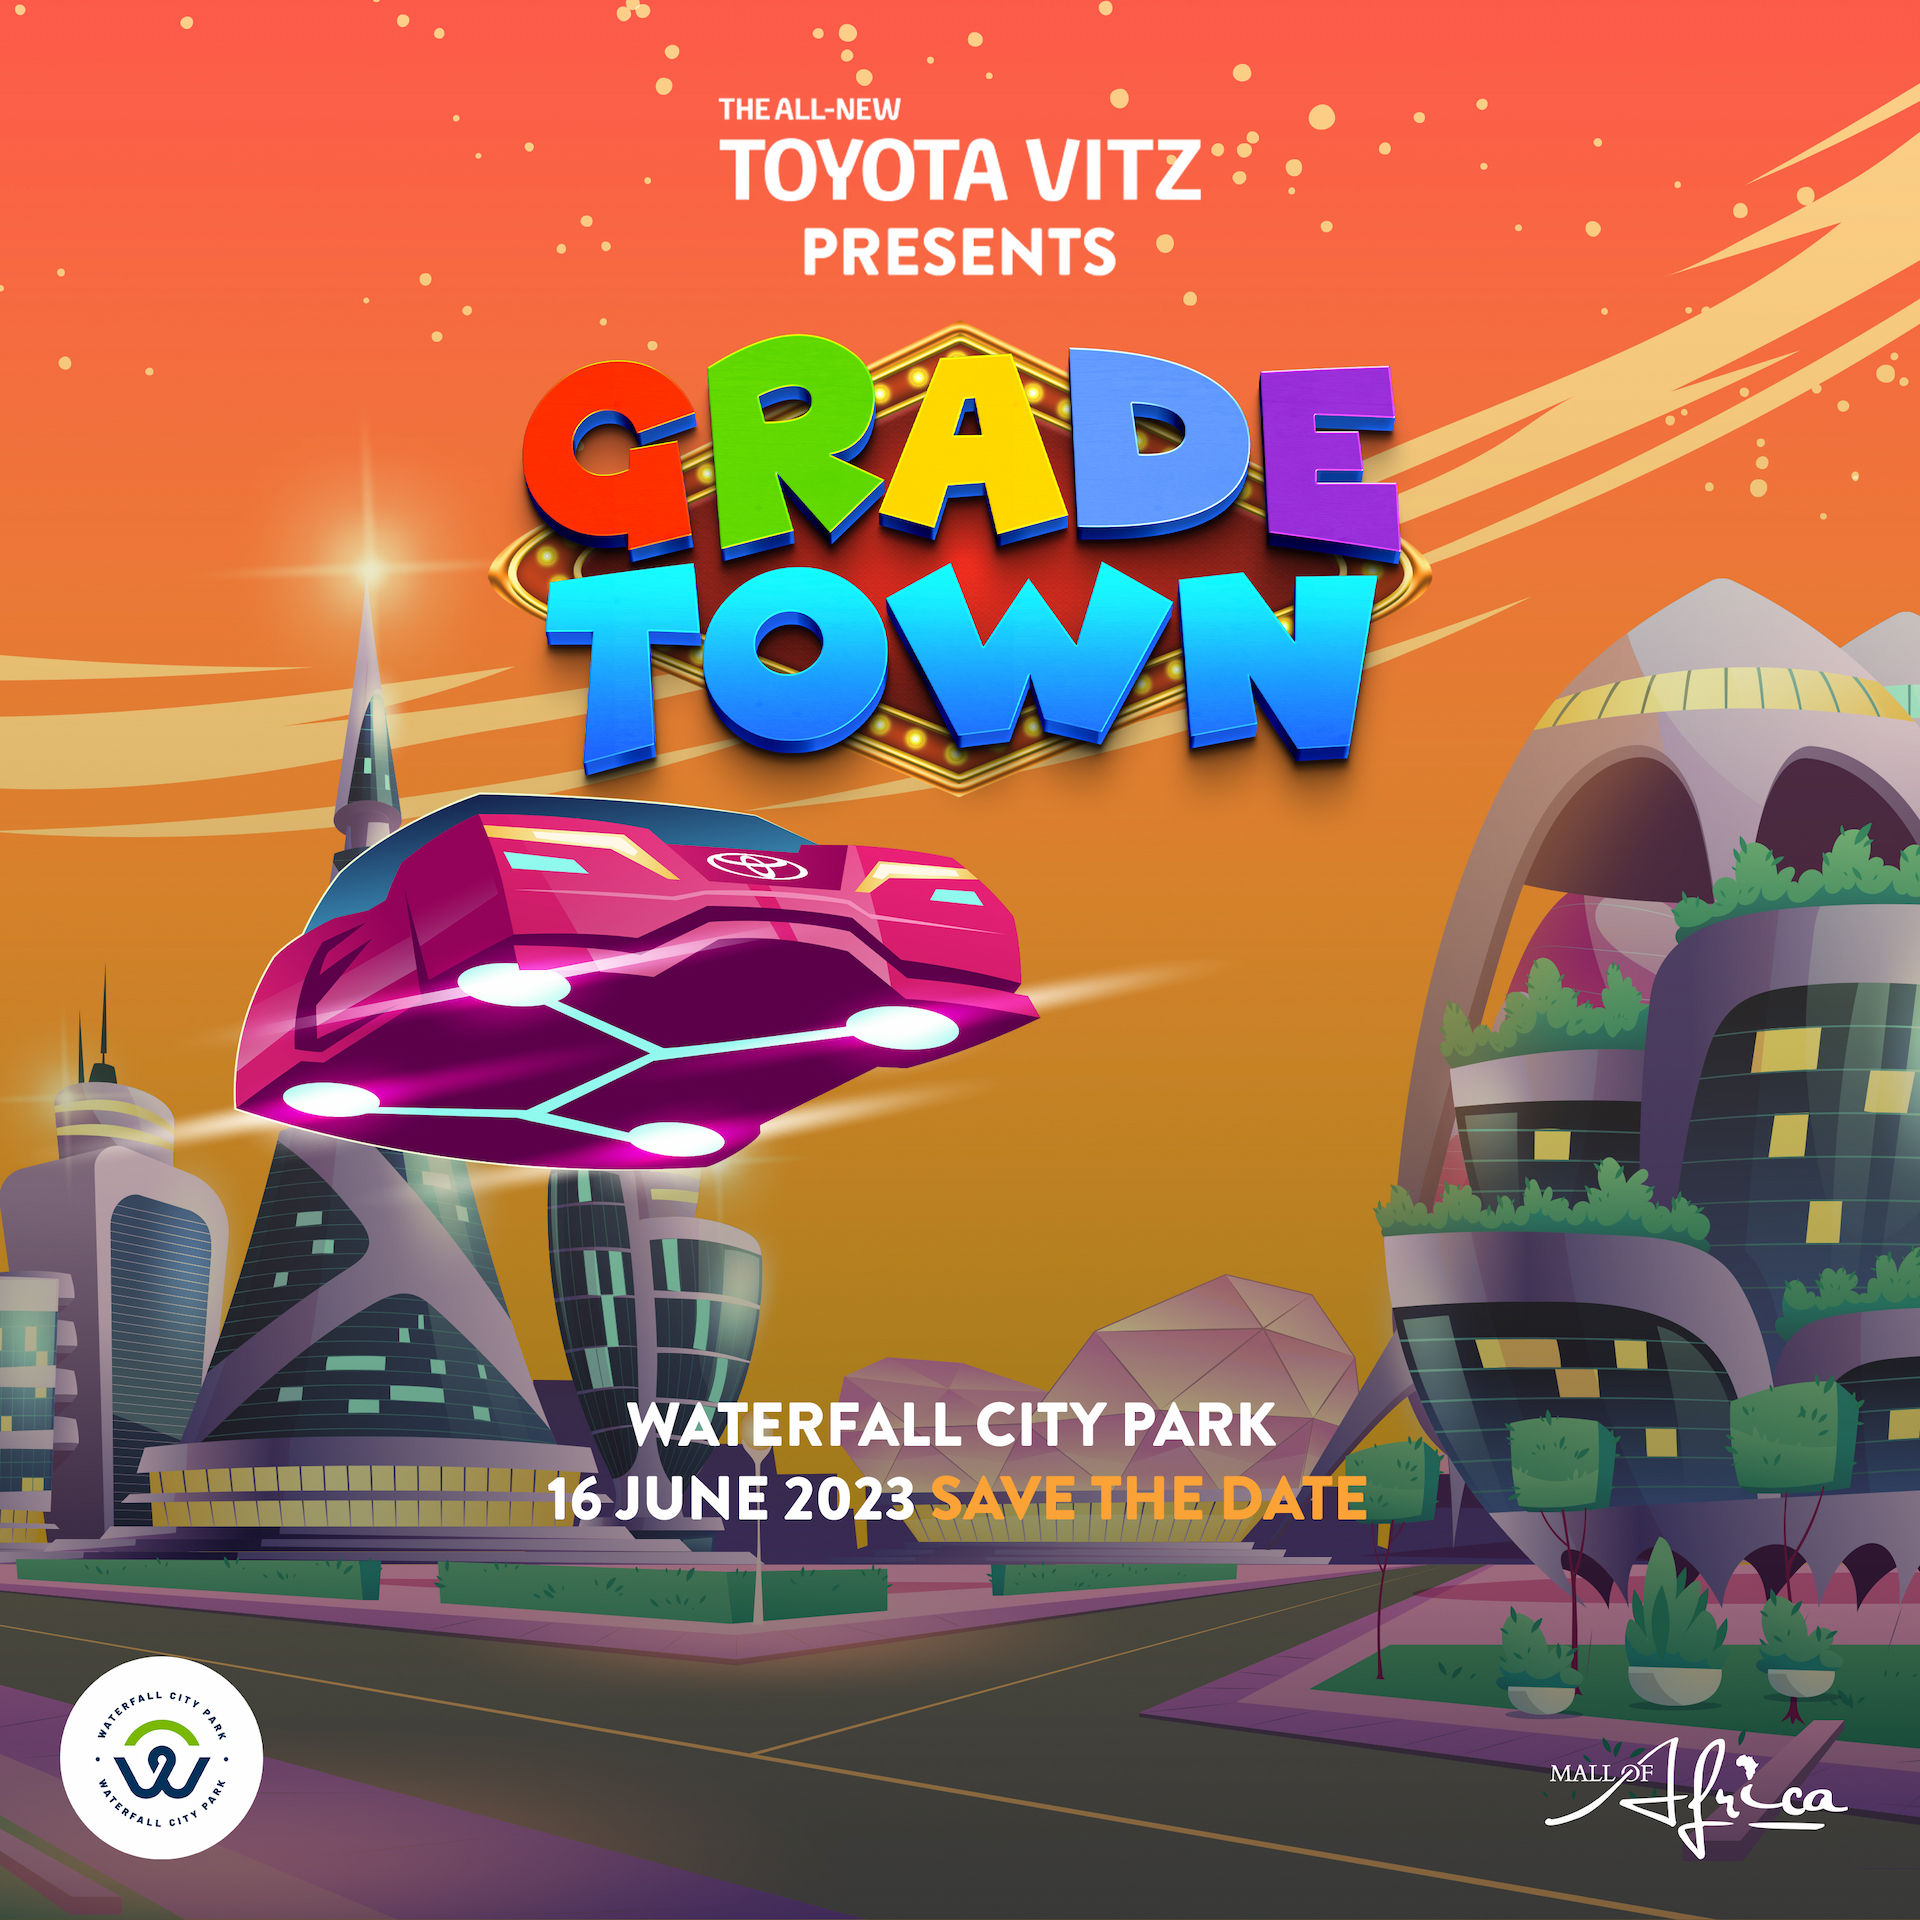 GradeTown Youth Day Festival Toyota Vitz